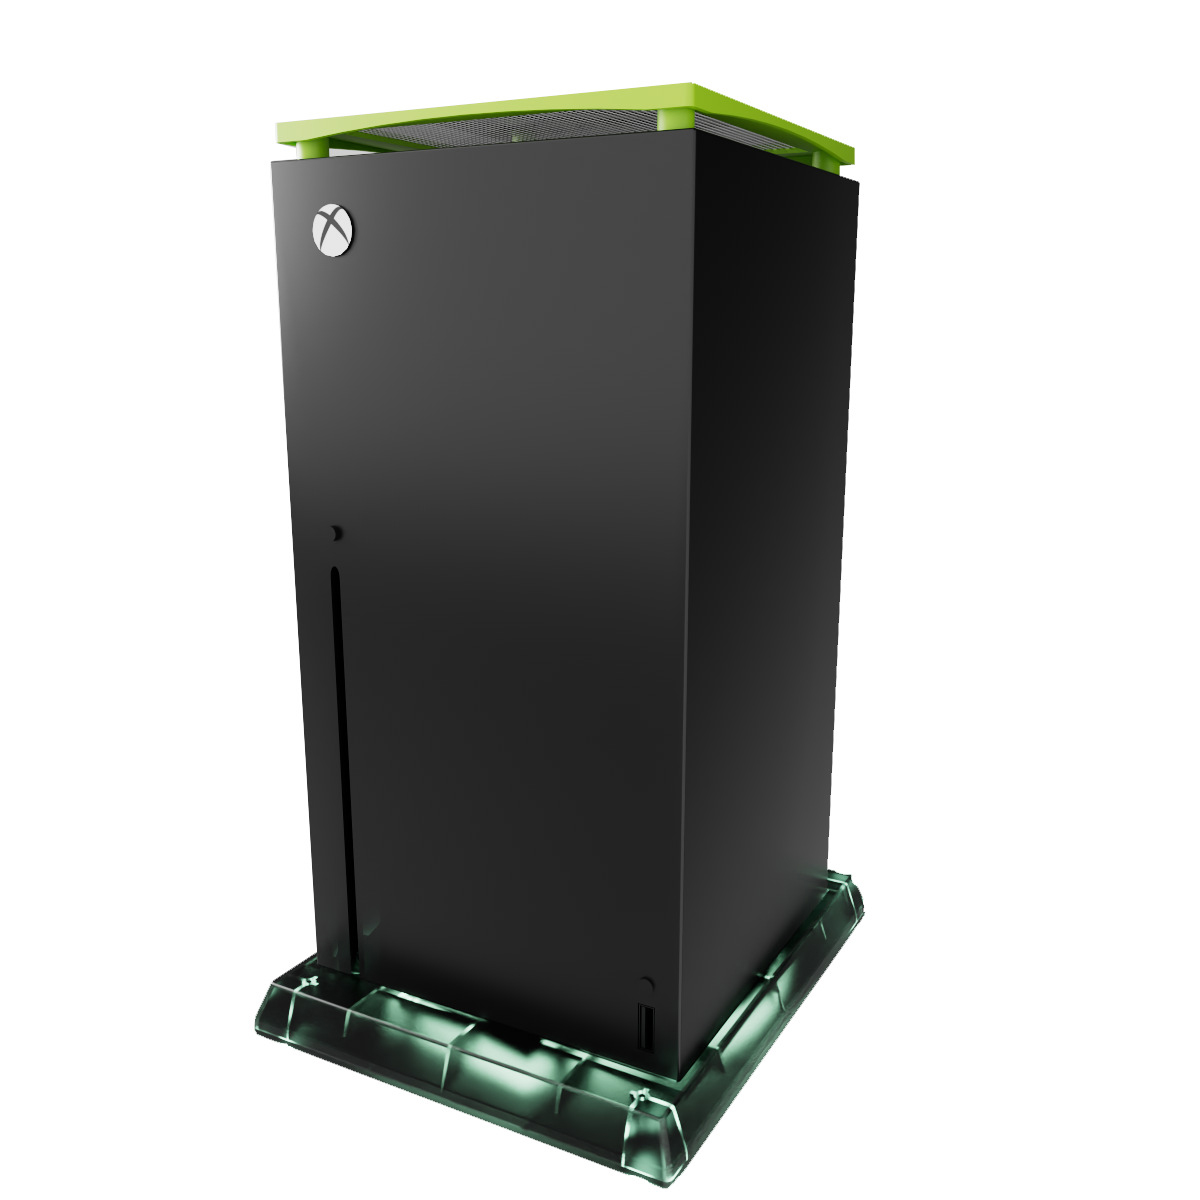 Xbox, Konsolenzubehör, TADOW Grau Grün Für Multifunktionales Staubnetz Staubfilter-Kühlungsset, und